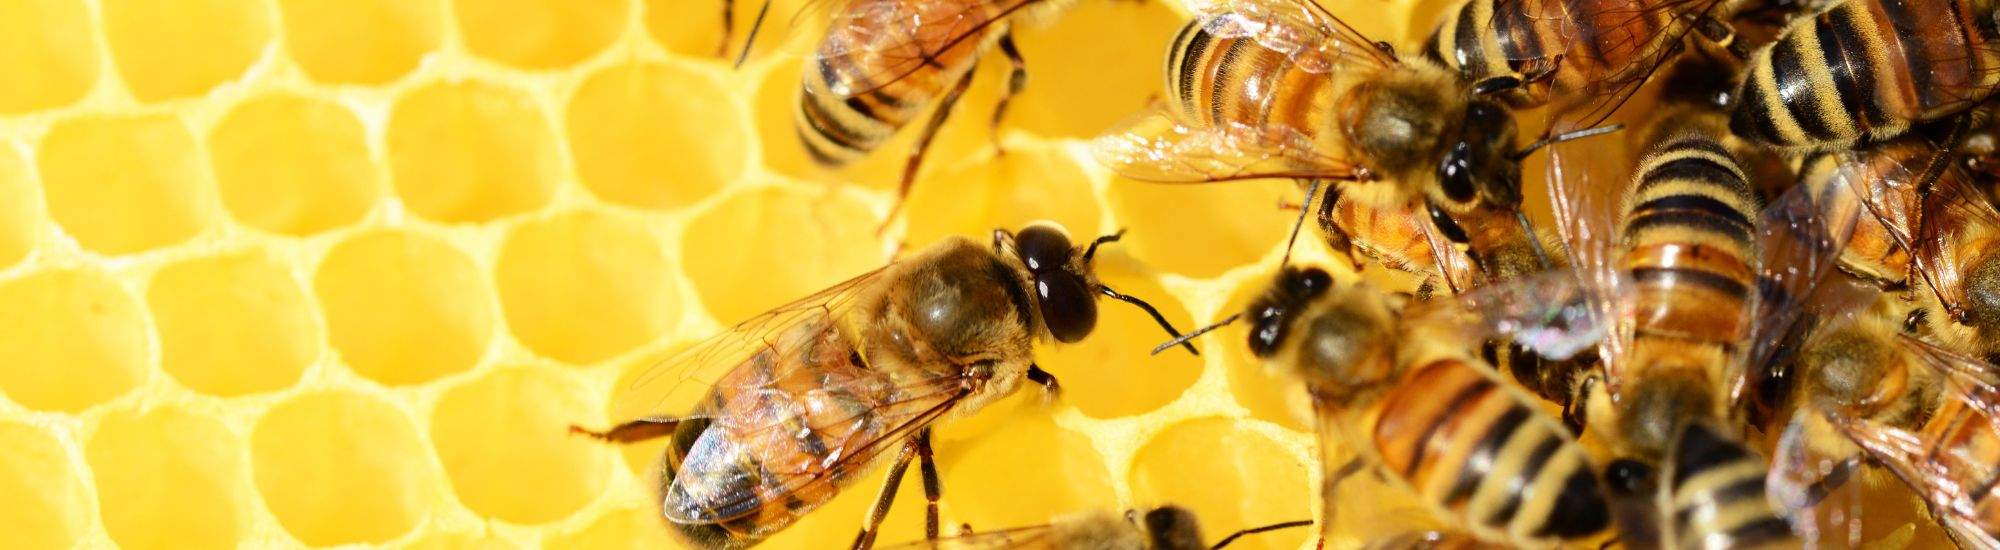 Krakau's Honingfestival: Een Viering van Honing en Bijen op het Wolnica-plein